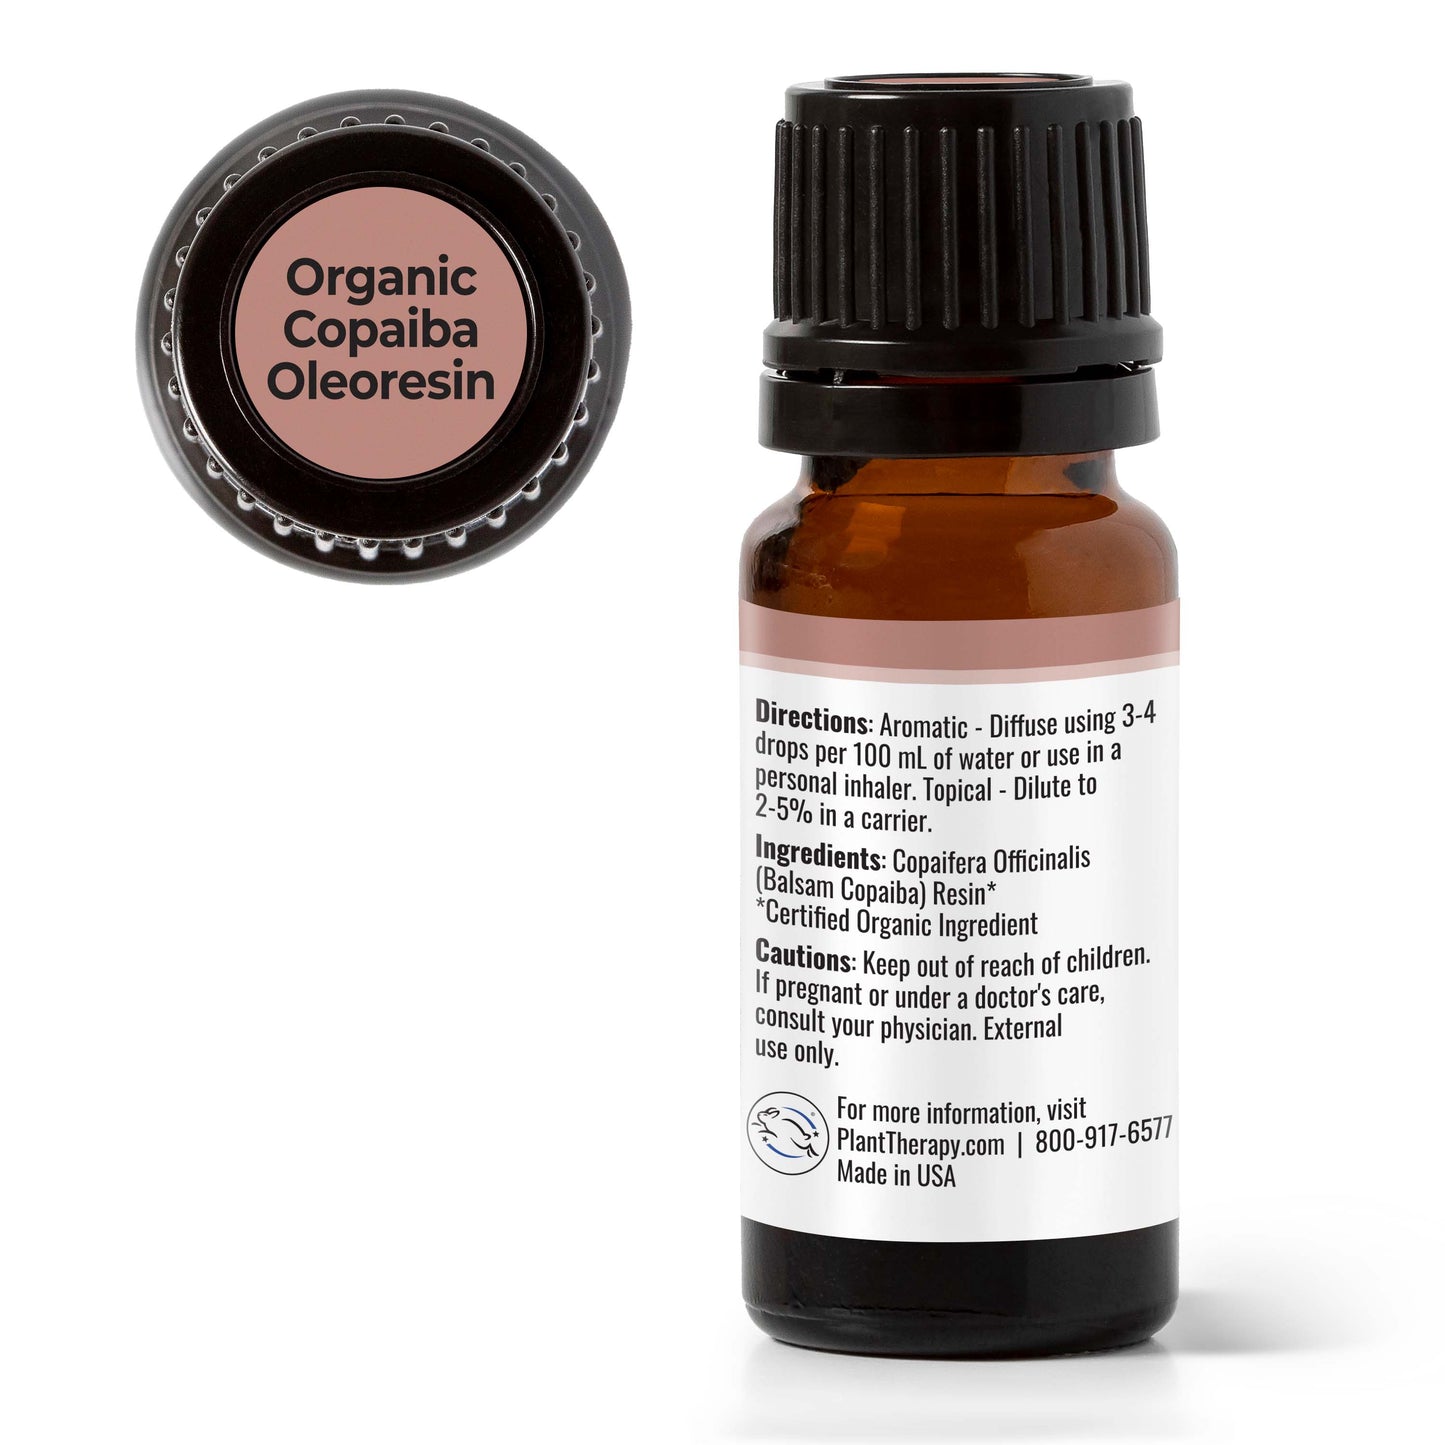 Organic Copaiba Oleoresin Essential Oil back label